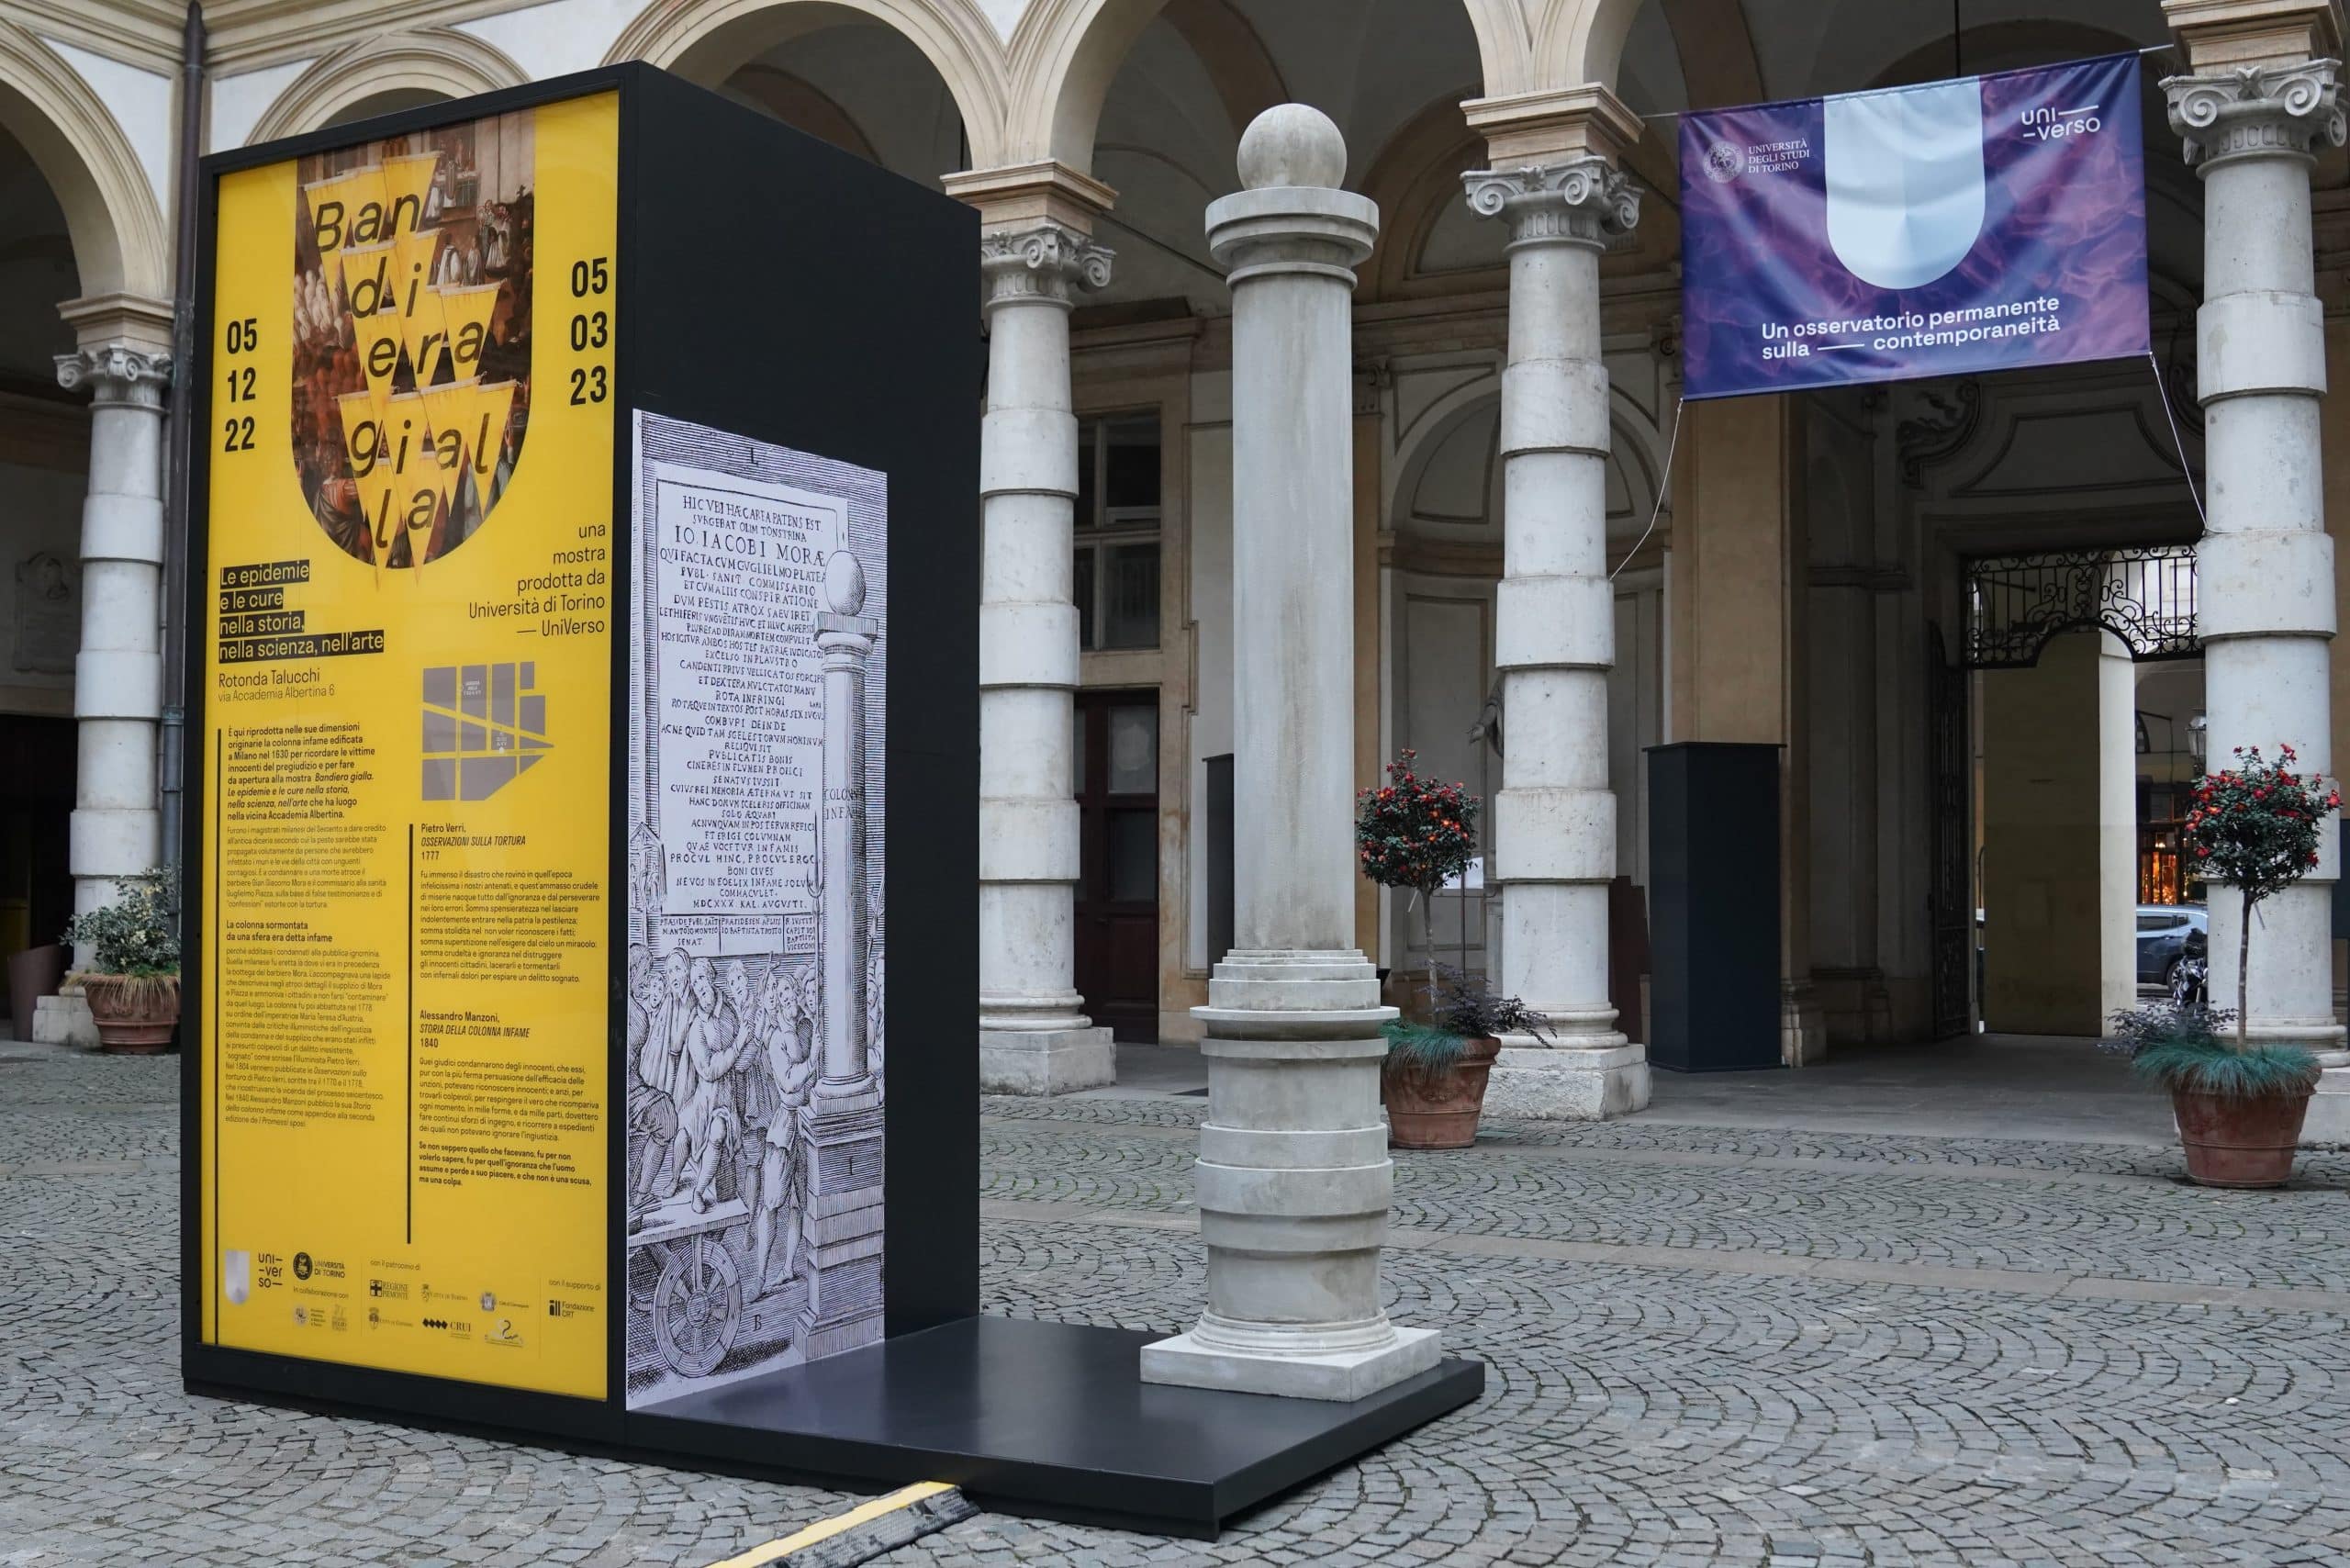 A Torino in corso la mostra dedicata alle epidemie